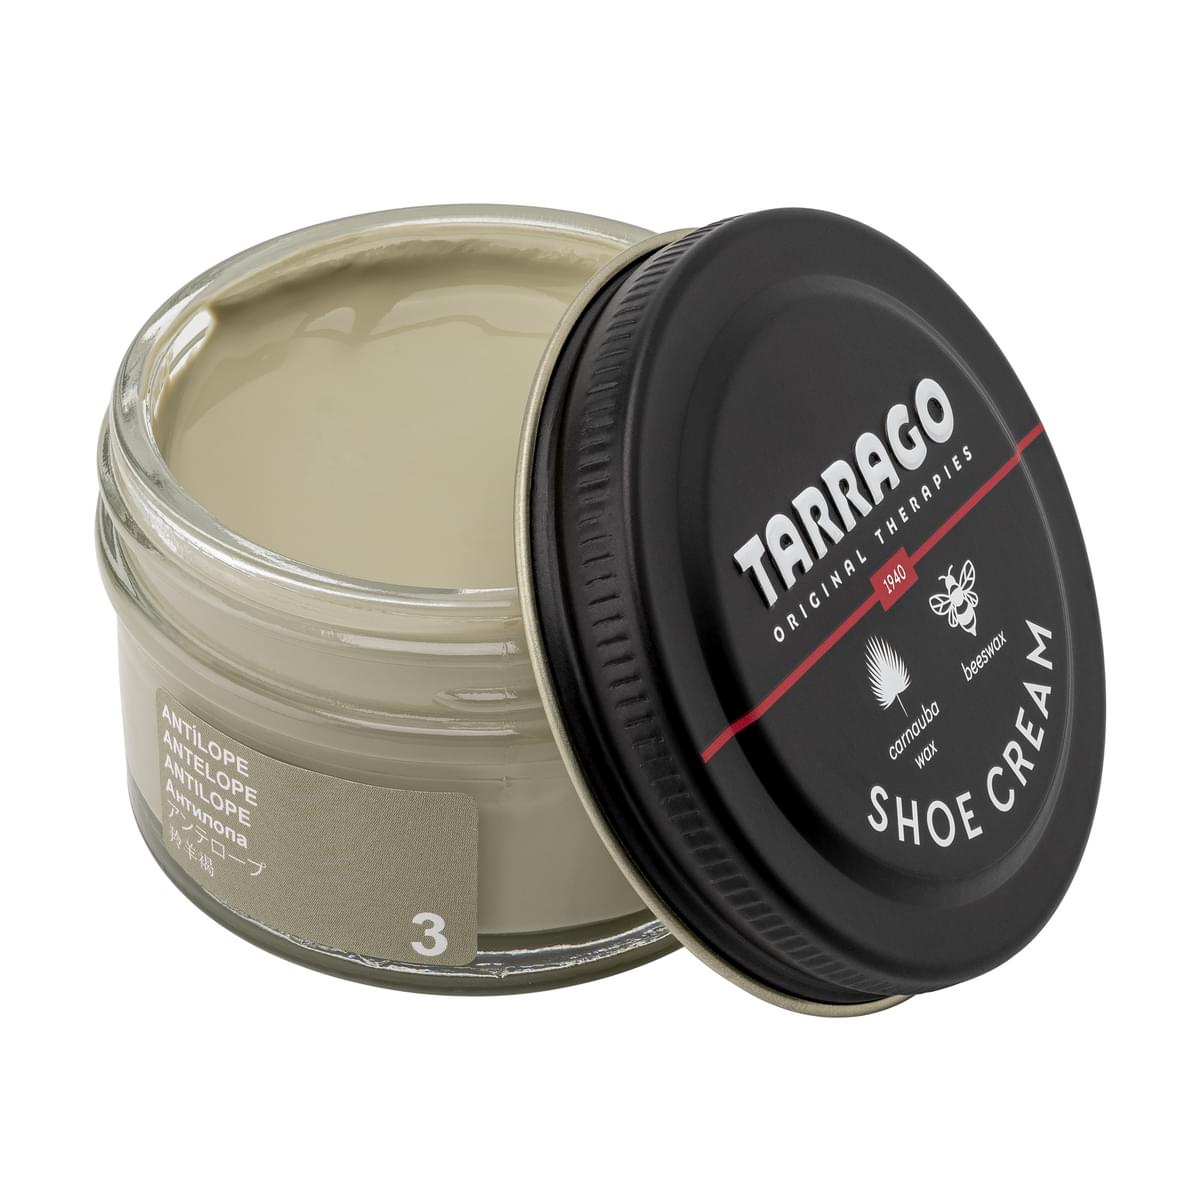 Tarrago Shoe Cream  - Antelope - 3